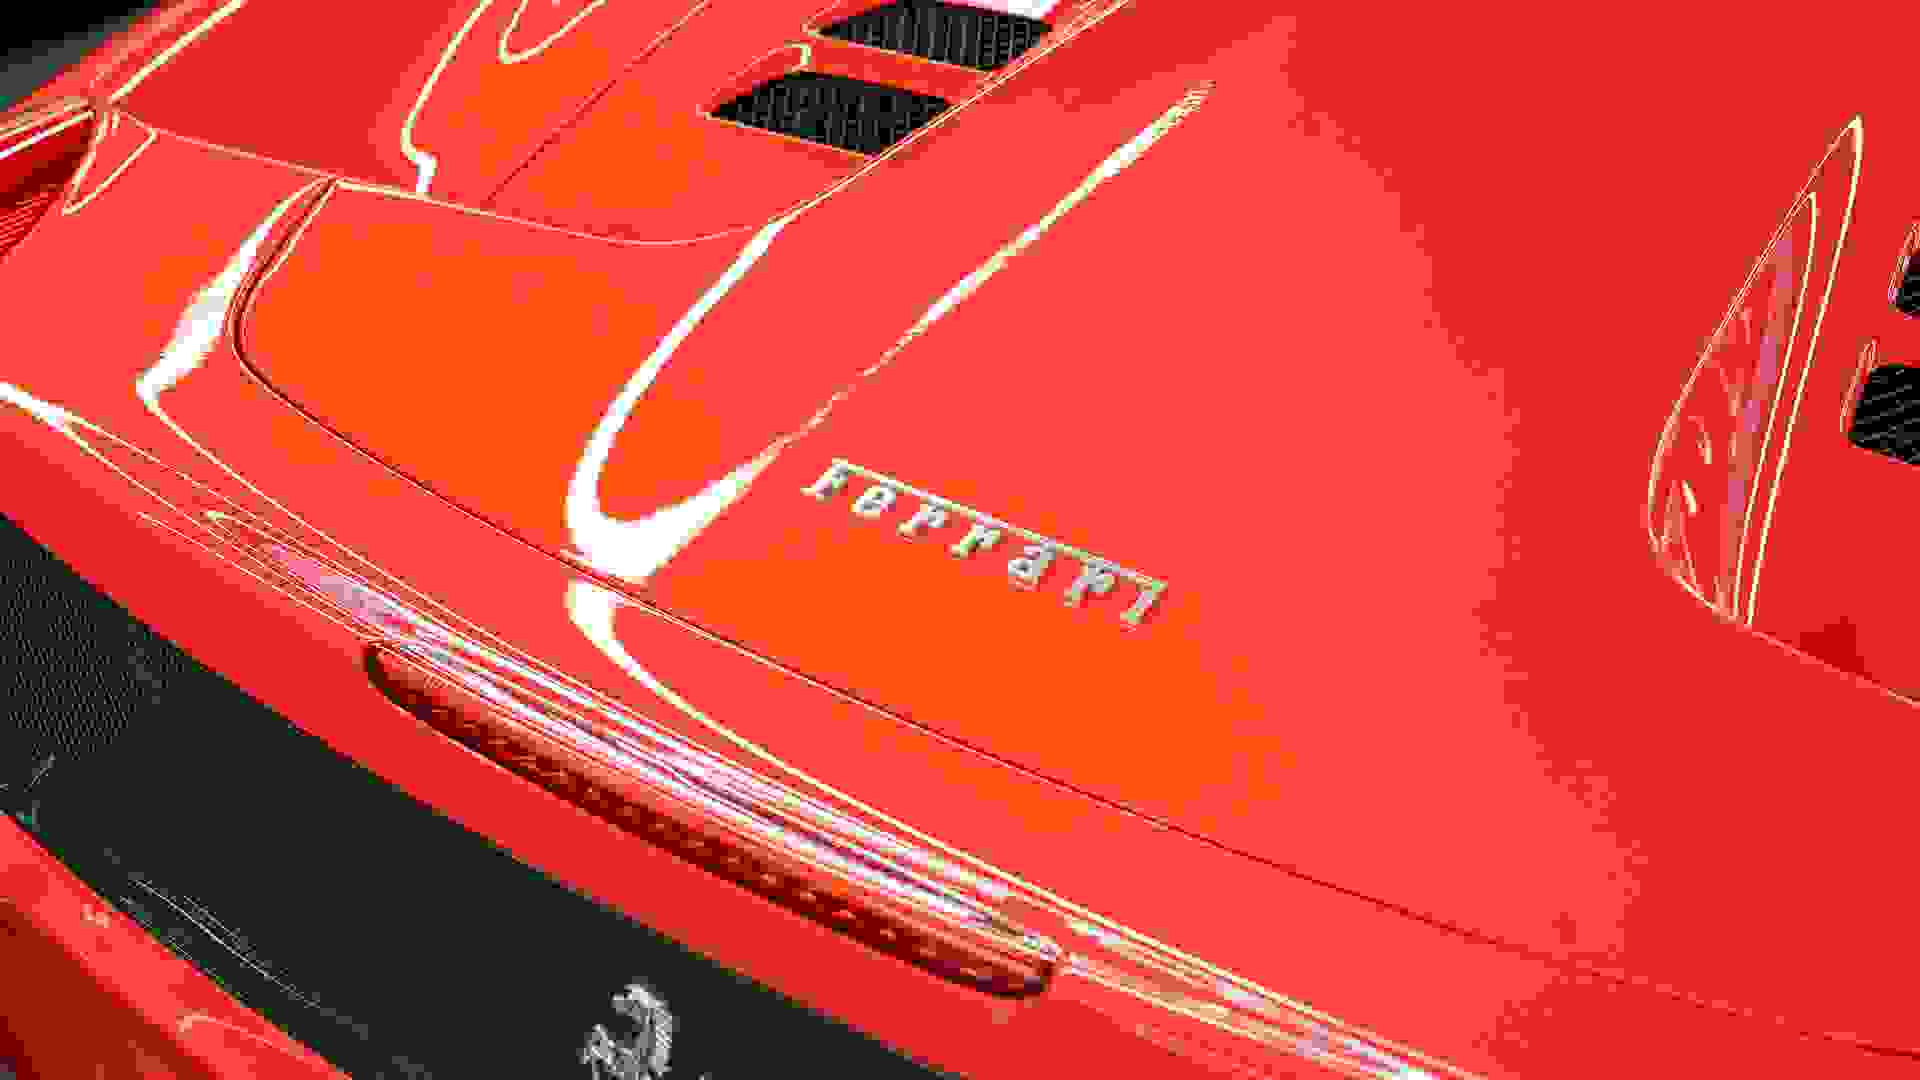 Ferrari 458 Photo 554baa33-e5e2-46af-a4e6-10514c376762.jpg